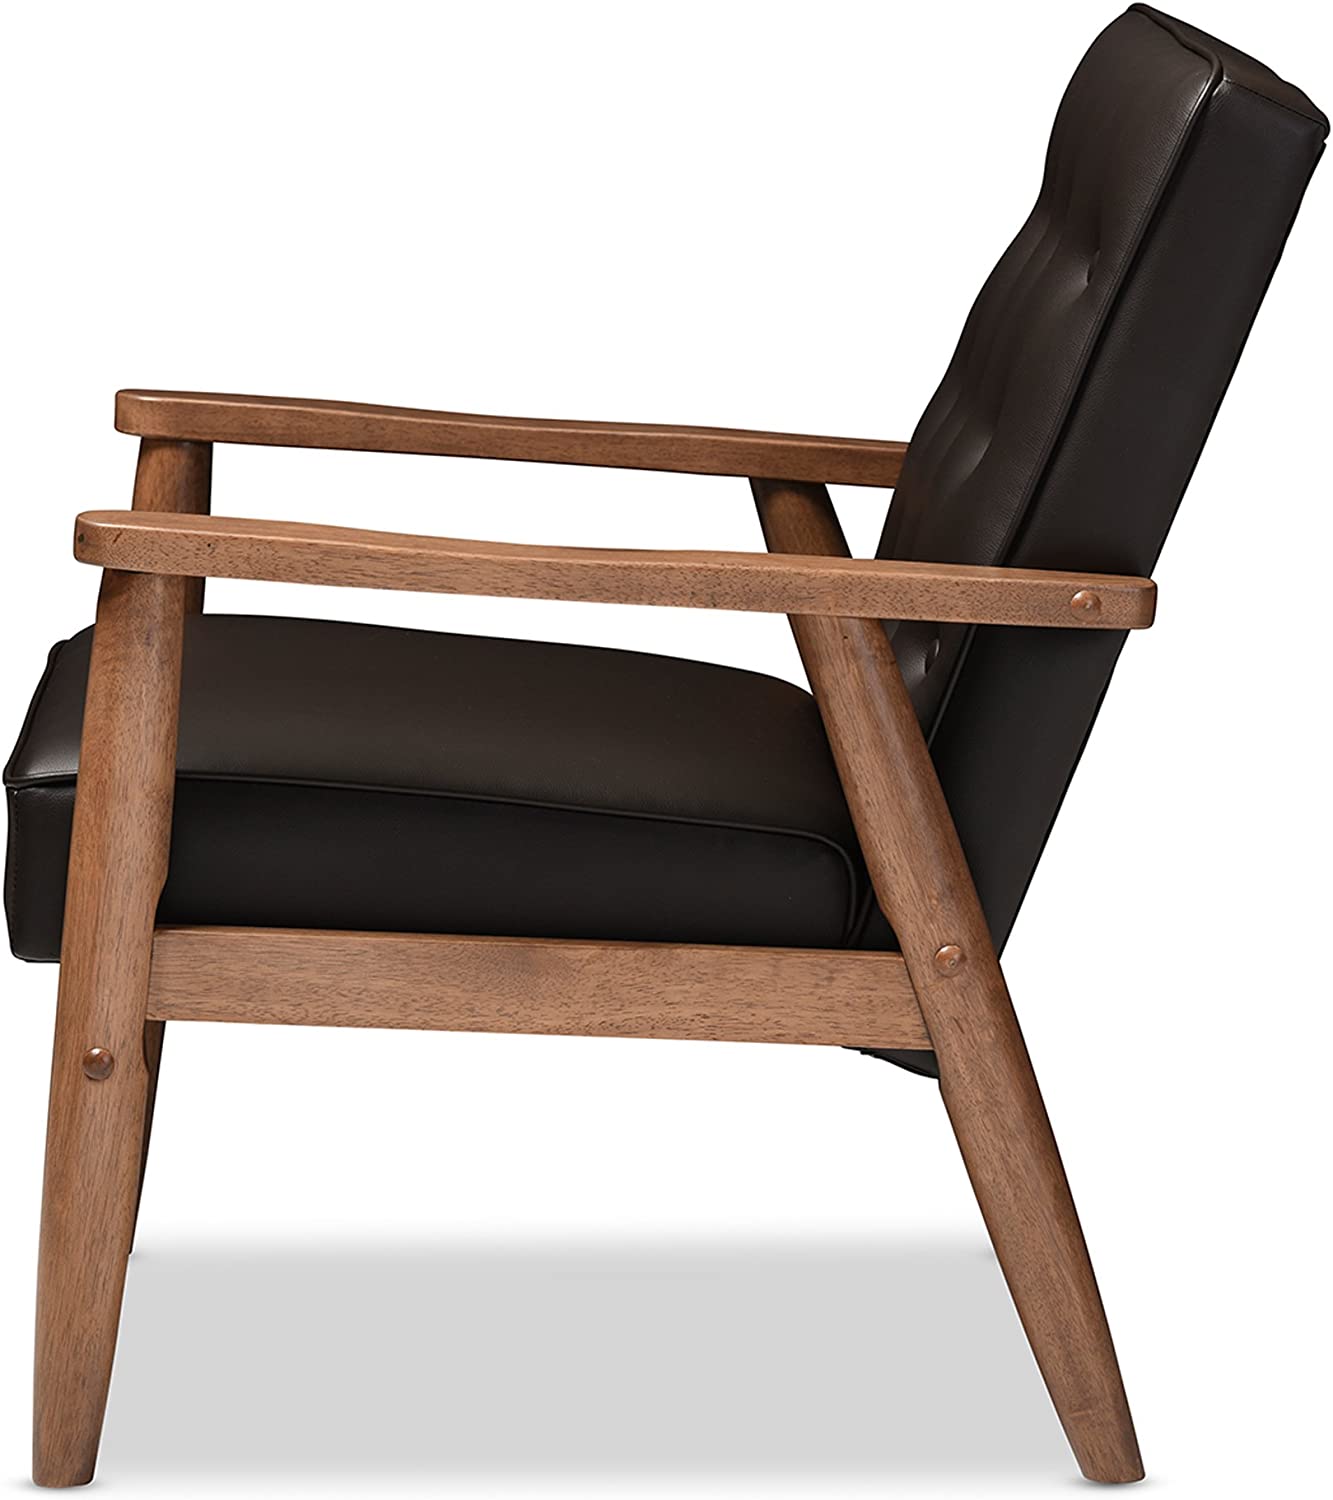 Baxton Studio BBT8013-Brown Chair armchairs, Brown